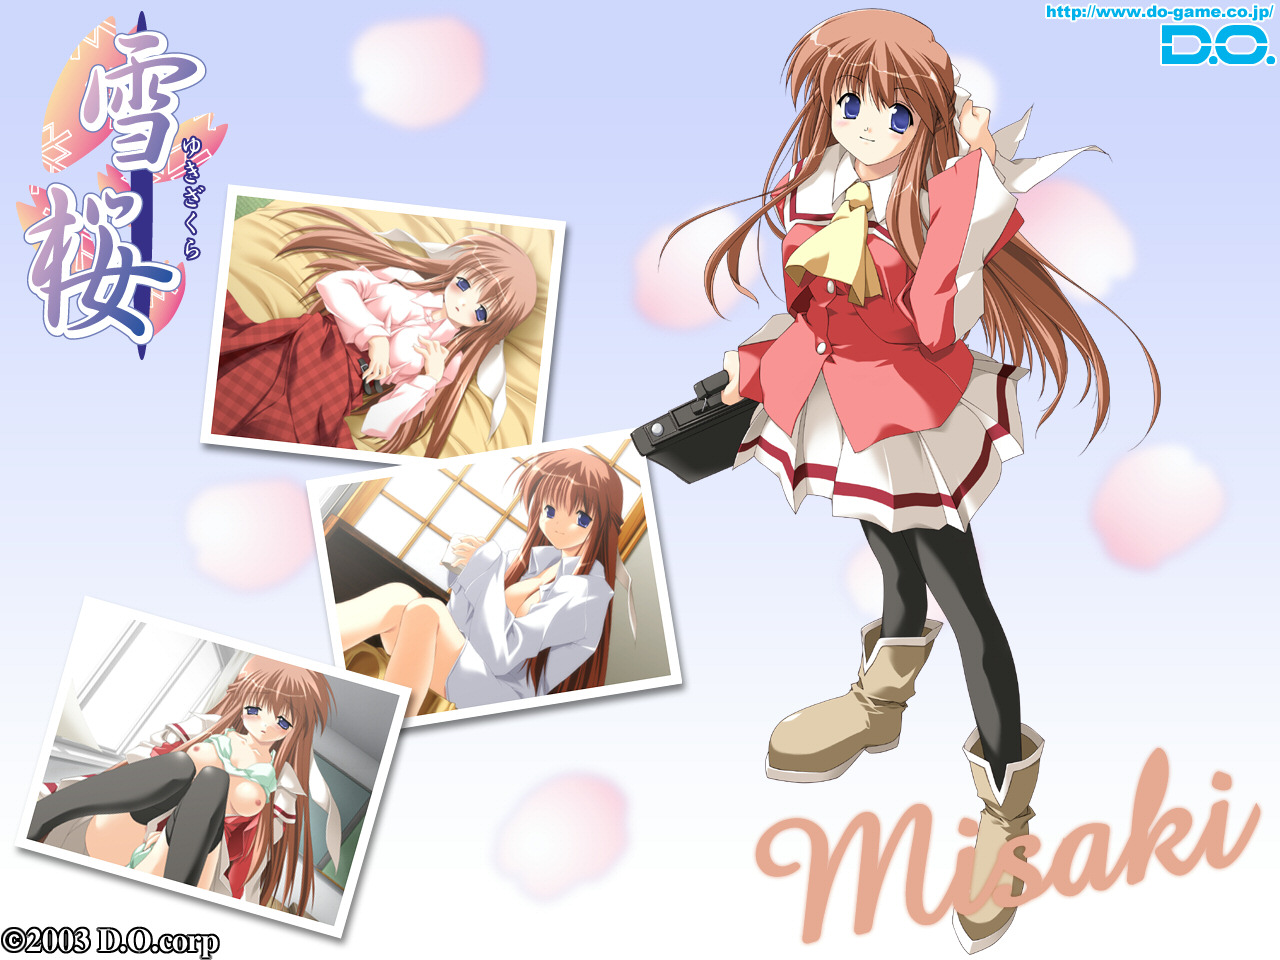 Download full size Yuki Sakura wallpaper / Anime / 1280x960